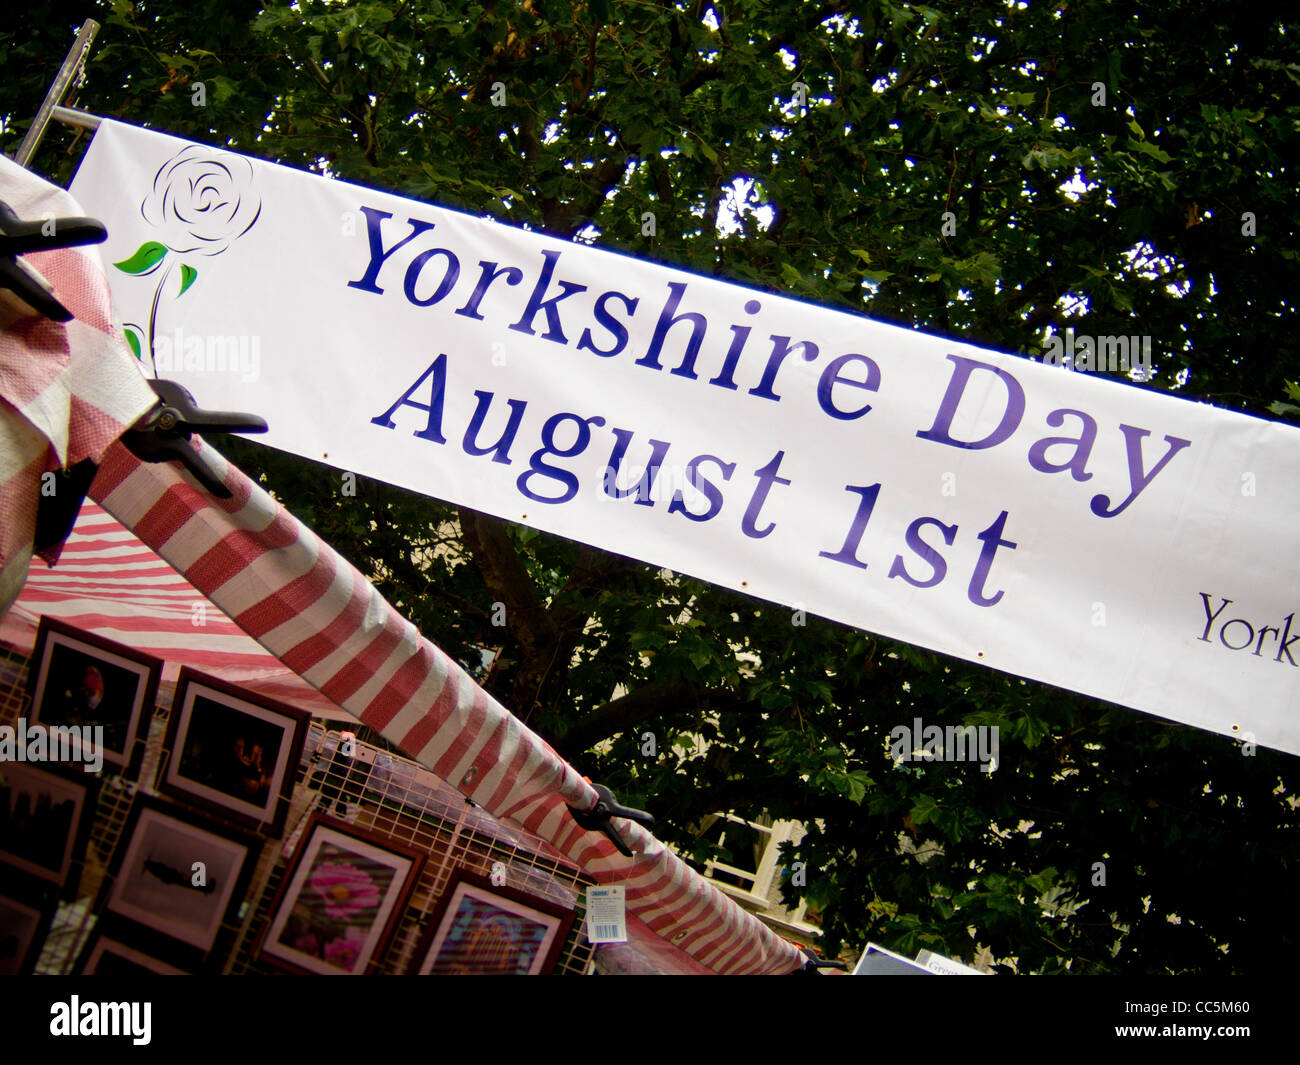 Bandeau publicitaire publicitaire du Yorkshire Day le 1er août, dans la ville de York. Banque D'Images